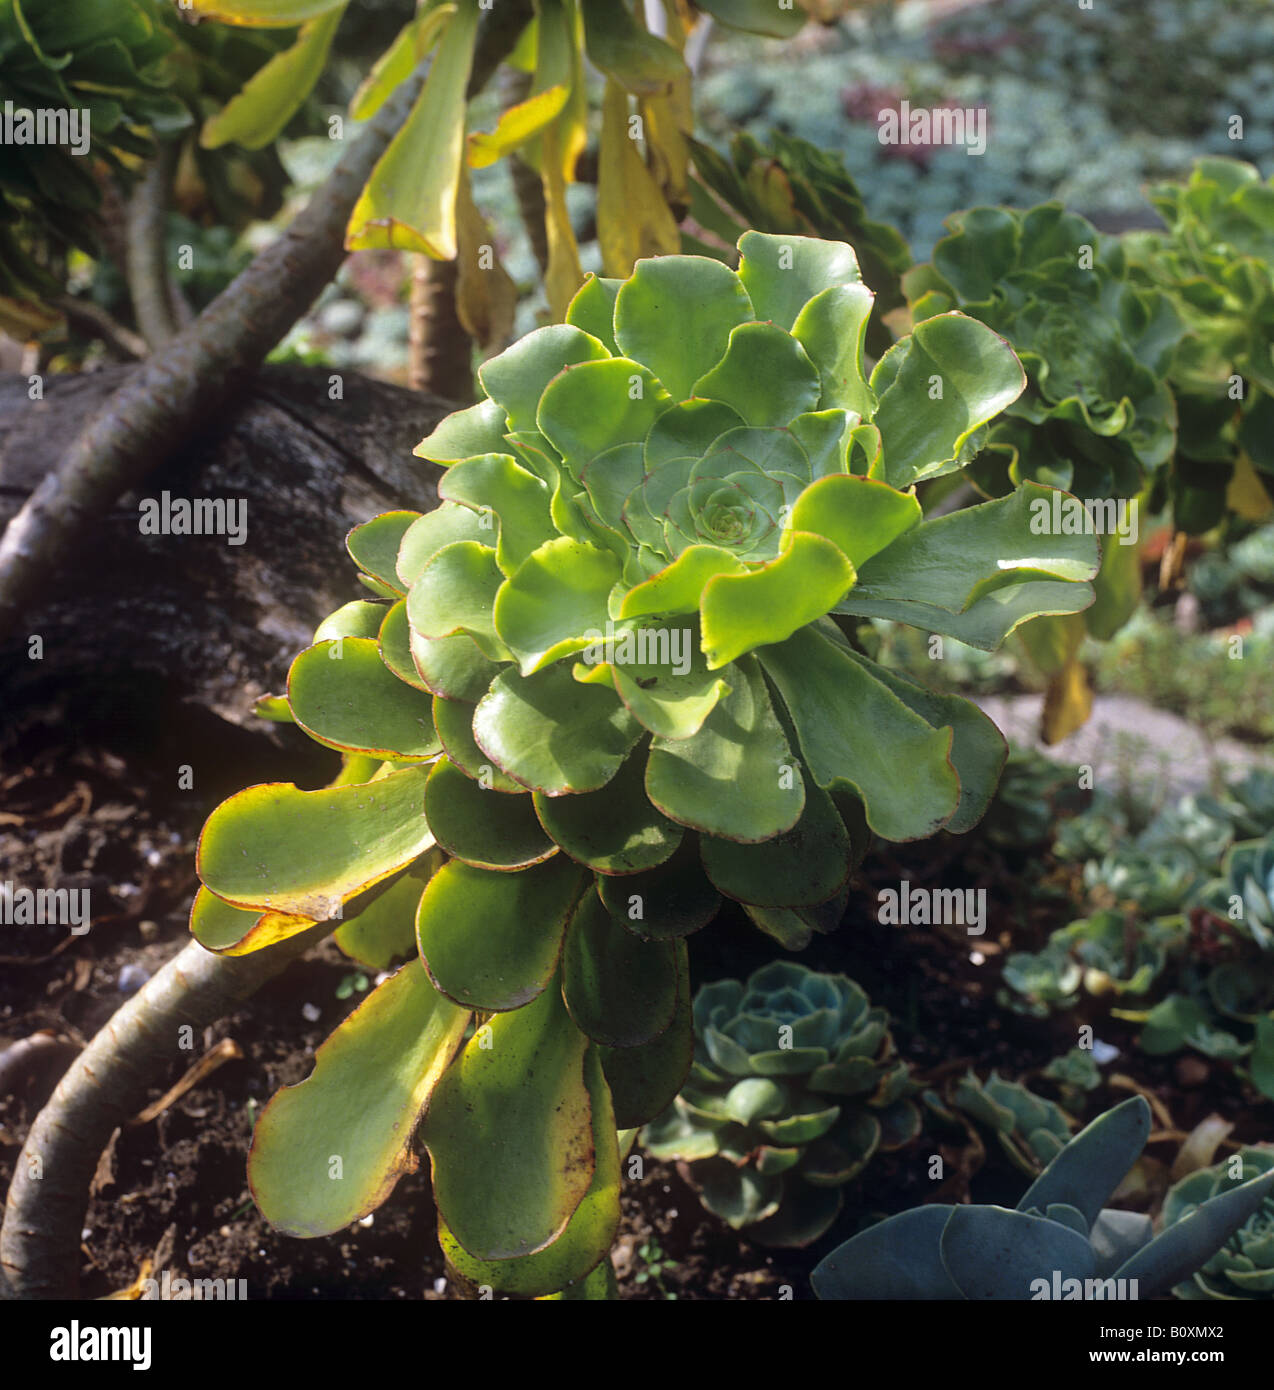 Aeonium arboreum / Aeonium arboreum Stock Photo